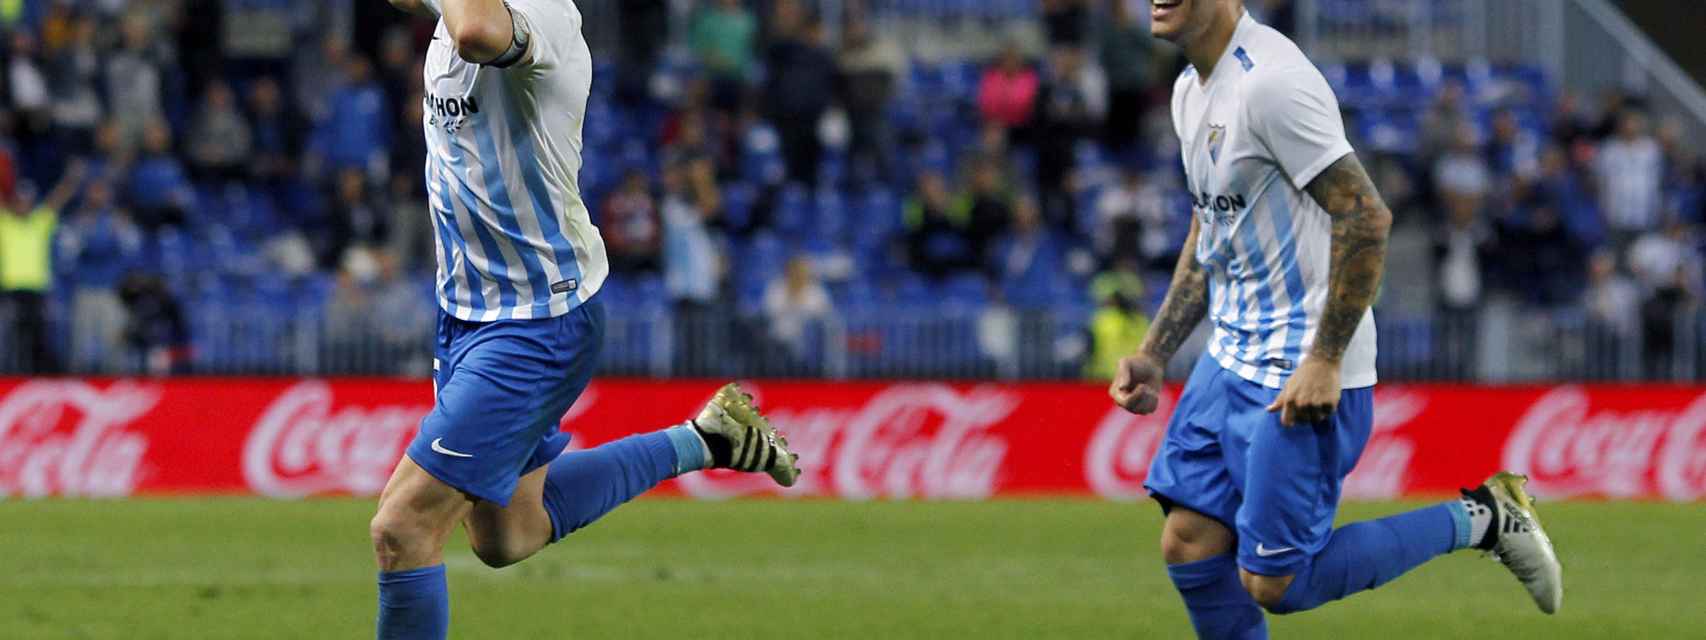 Siga en vivo el Málaga - Deportivo